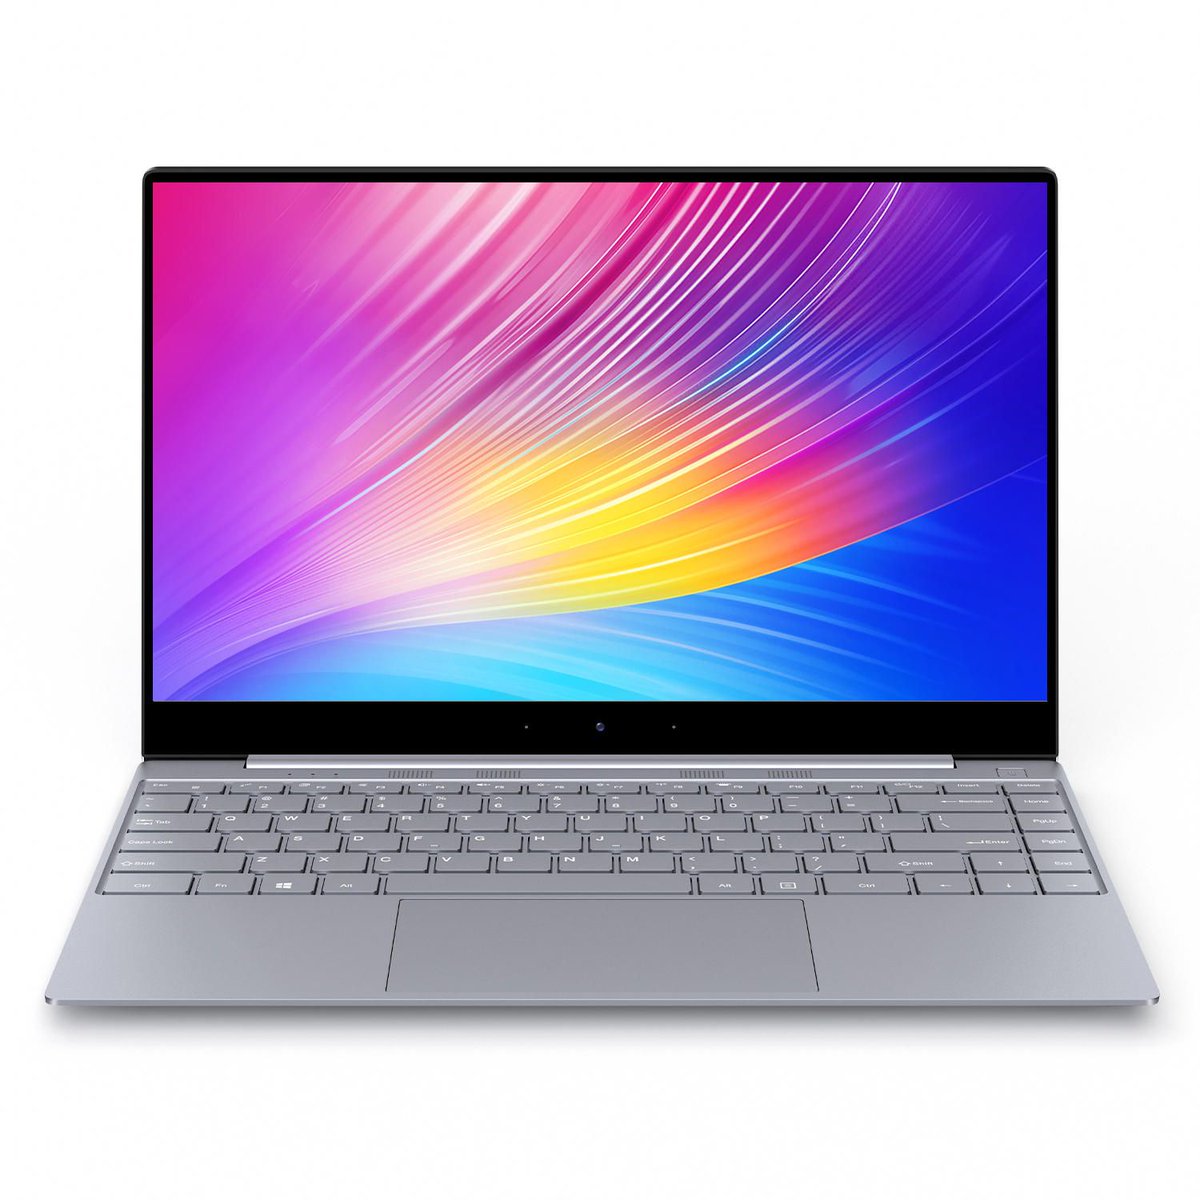 BMAX X14 Laptop 14.1 inch Intel Gemini Lake N4100